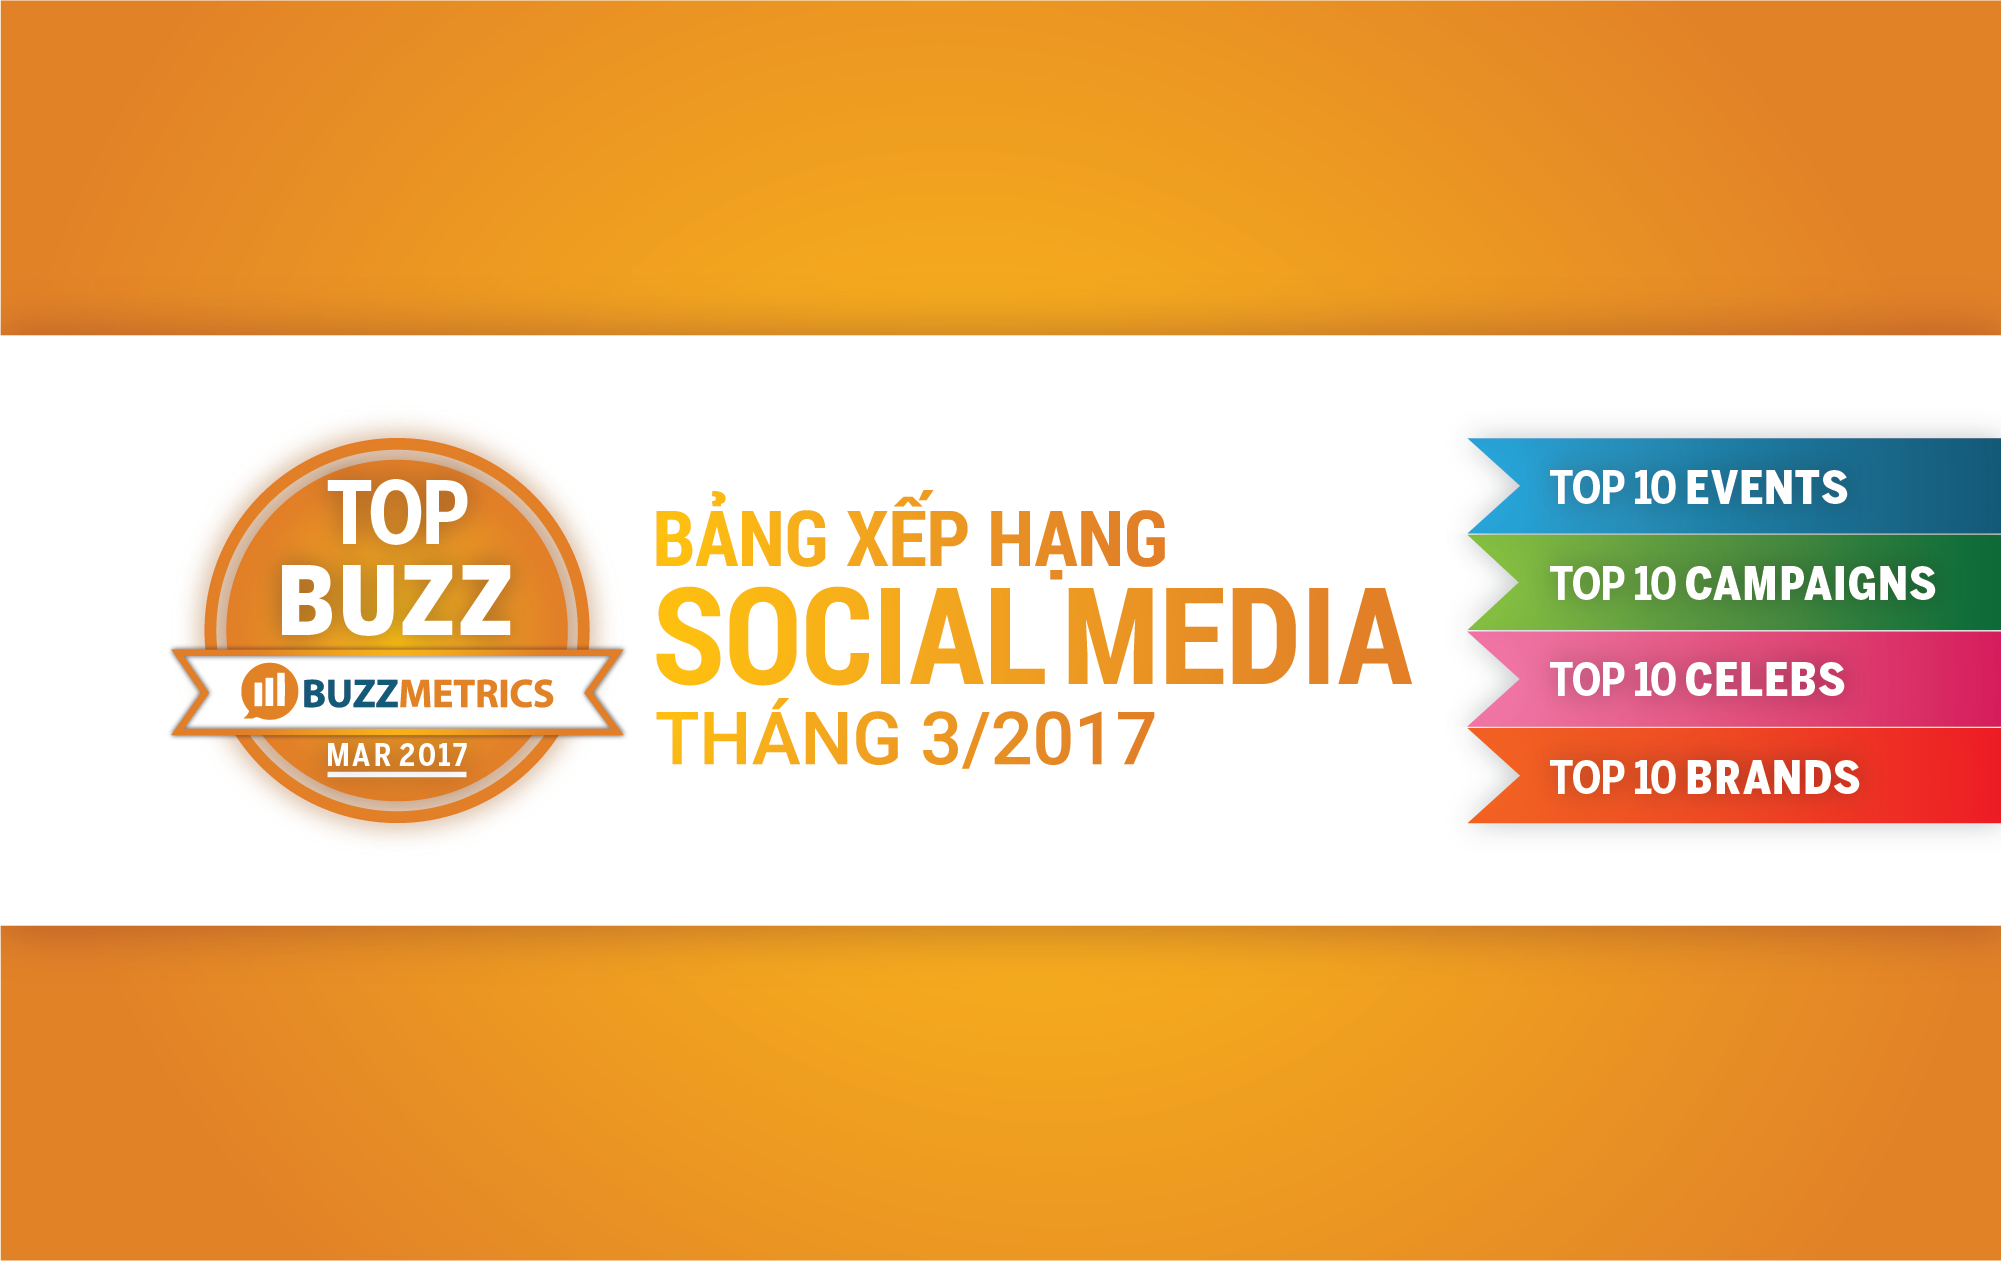 TOPBUZZ: Bảng xếp hạng social media tháng 03/2017 | Bài viết BSI | Buzzmetrics